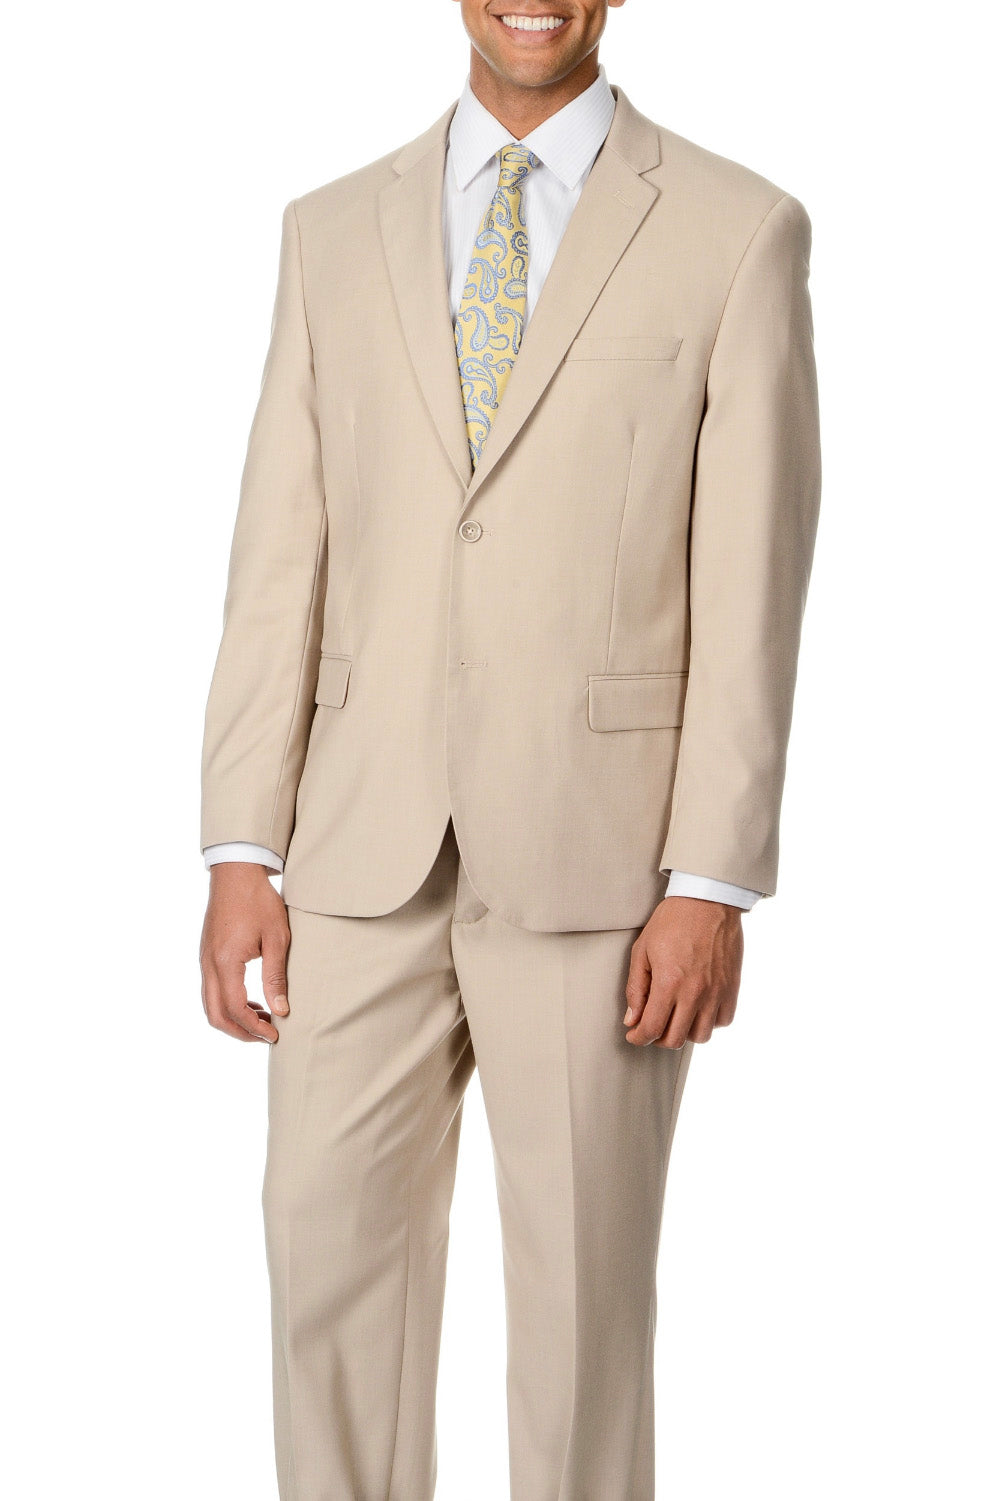 Caravelli Caravelli Solid Beige Suit